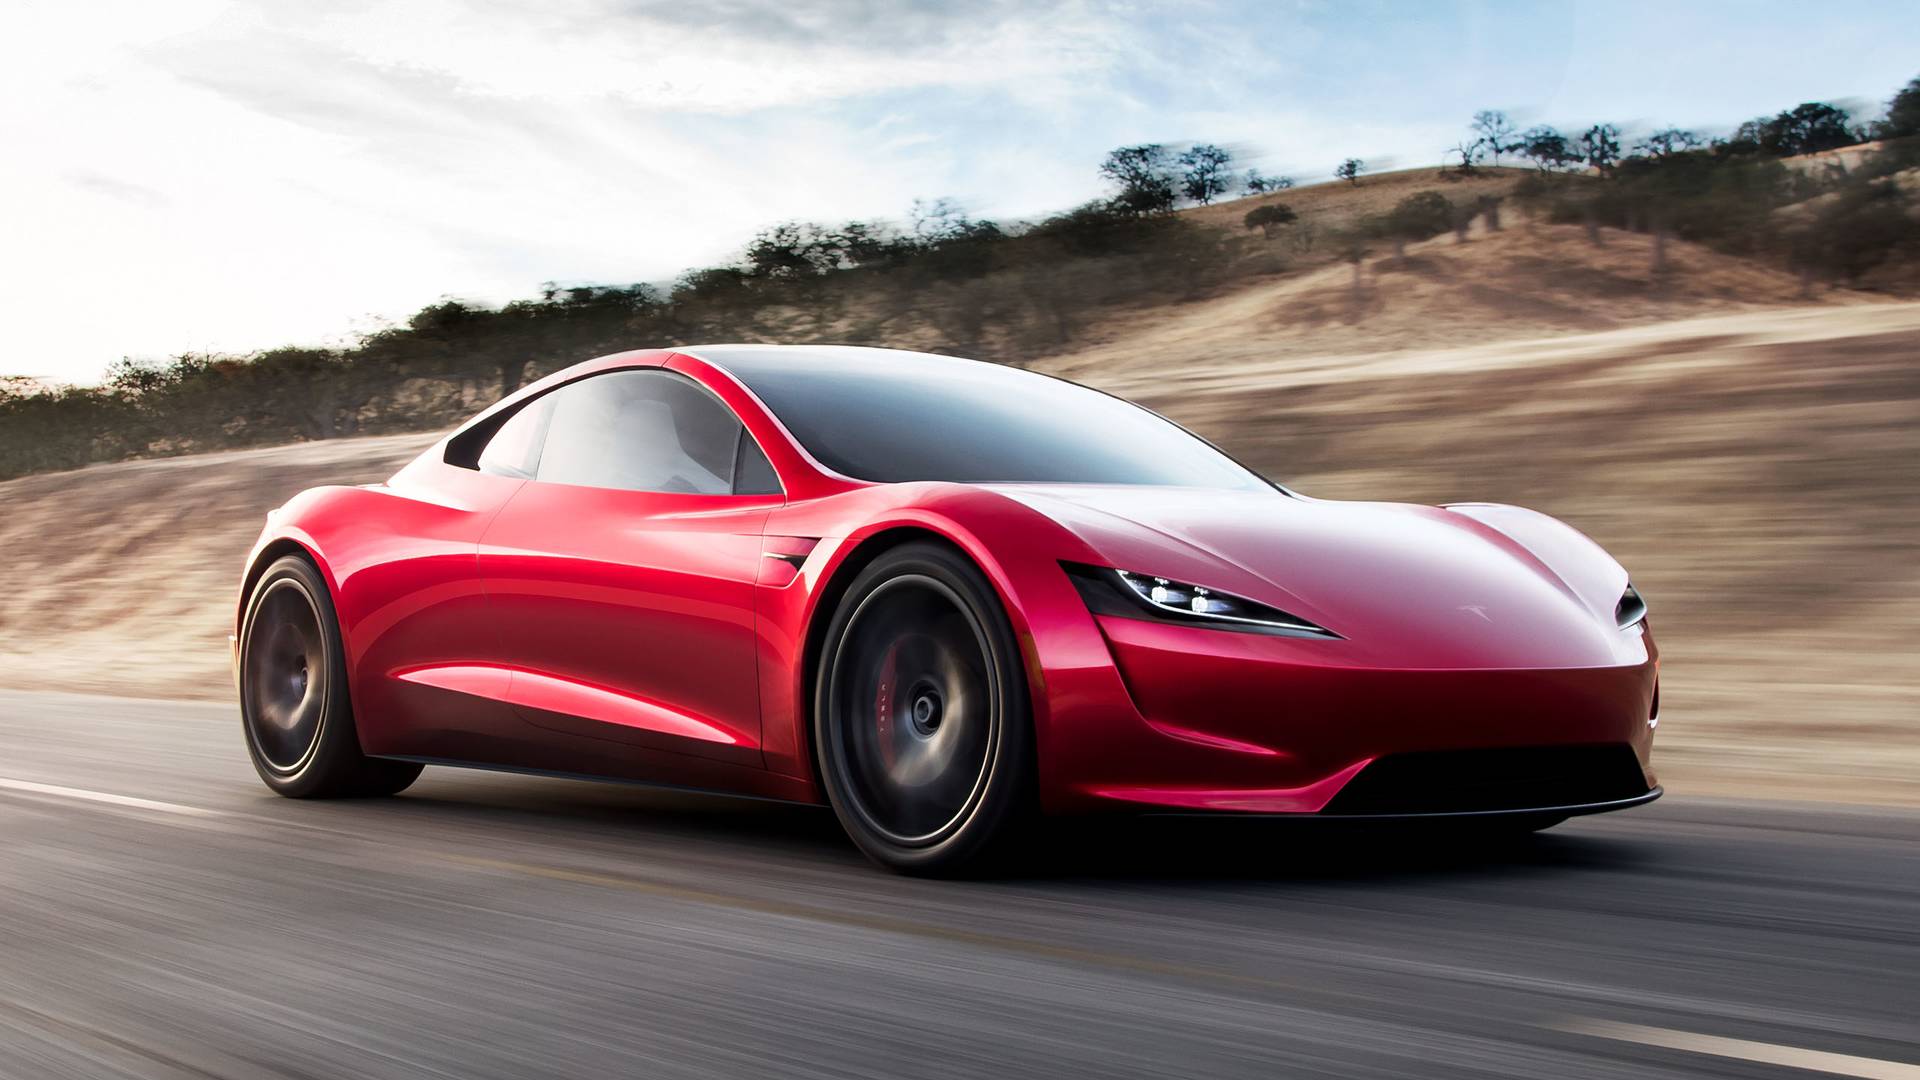 El Tesla Roadster en su segunda versión fue presentado en 2017, sin embargo, la contínua postergación de su lanzamiento lo ha convertido en un objeto de deseo como ningún otro entre los autos eléctricos